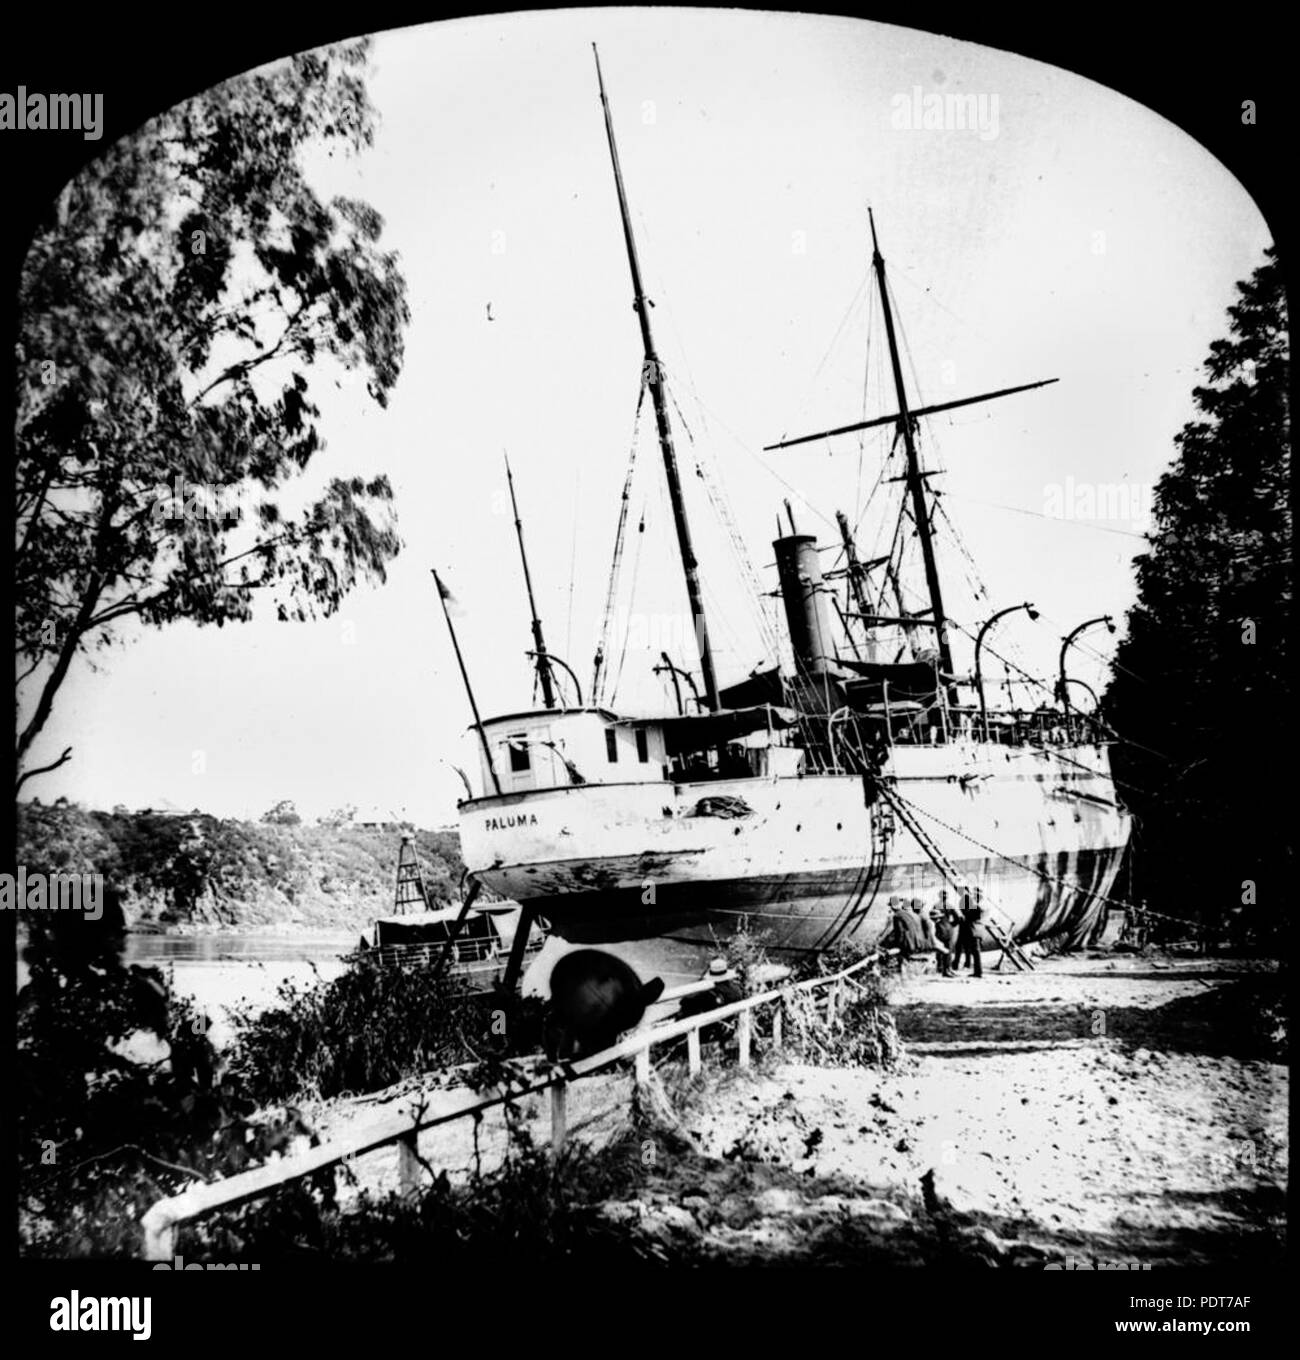 243 1 174939 StateLibQld Paluma (navire) est échoué dans les jardins botaniques, Brisbane, 1893 Banque D'Images